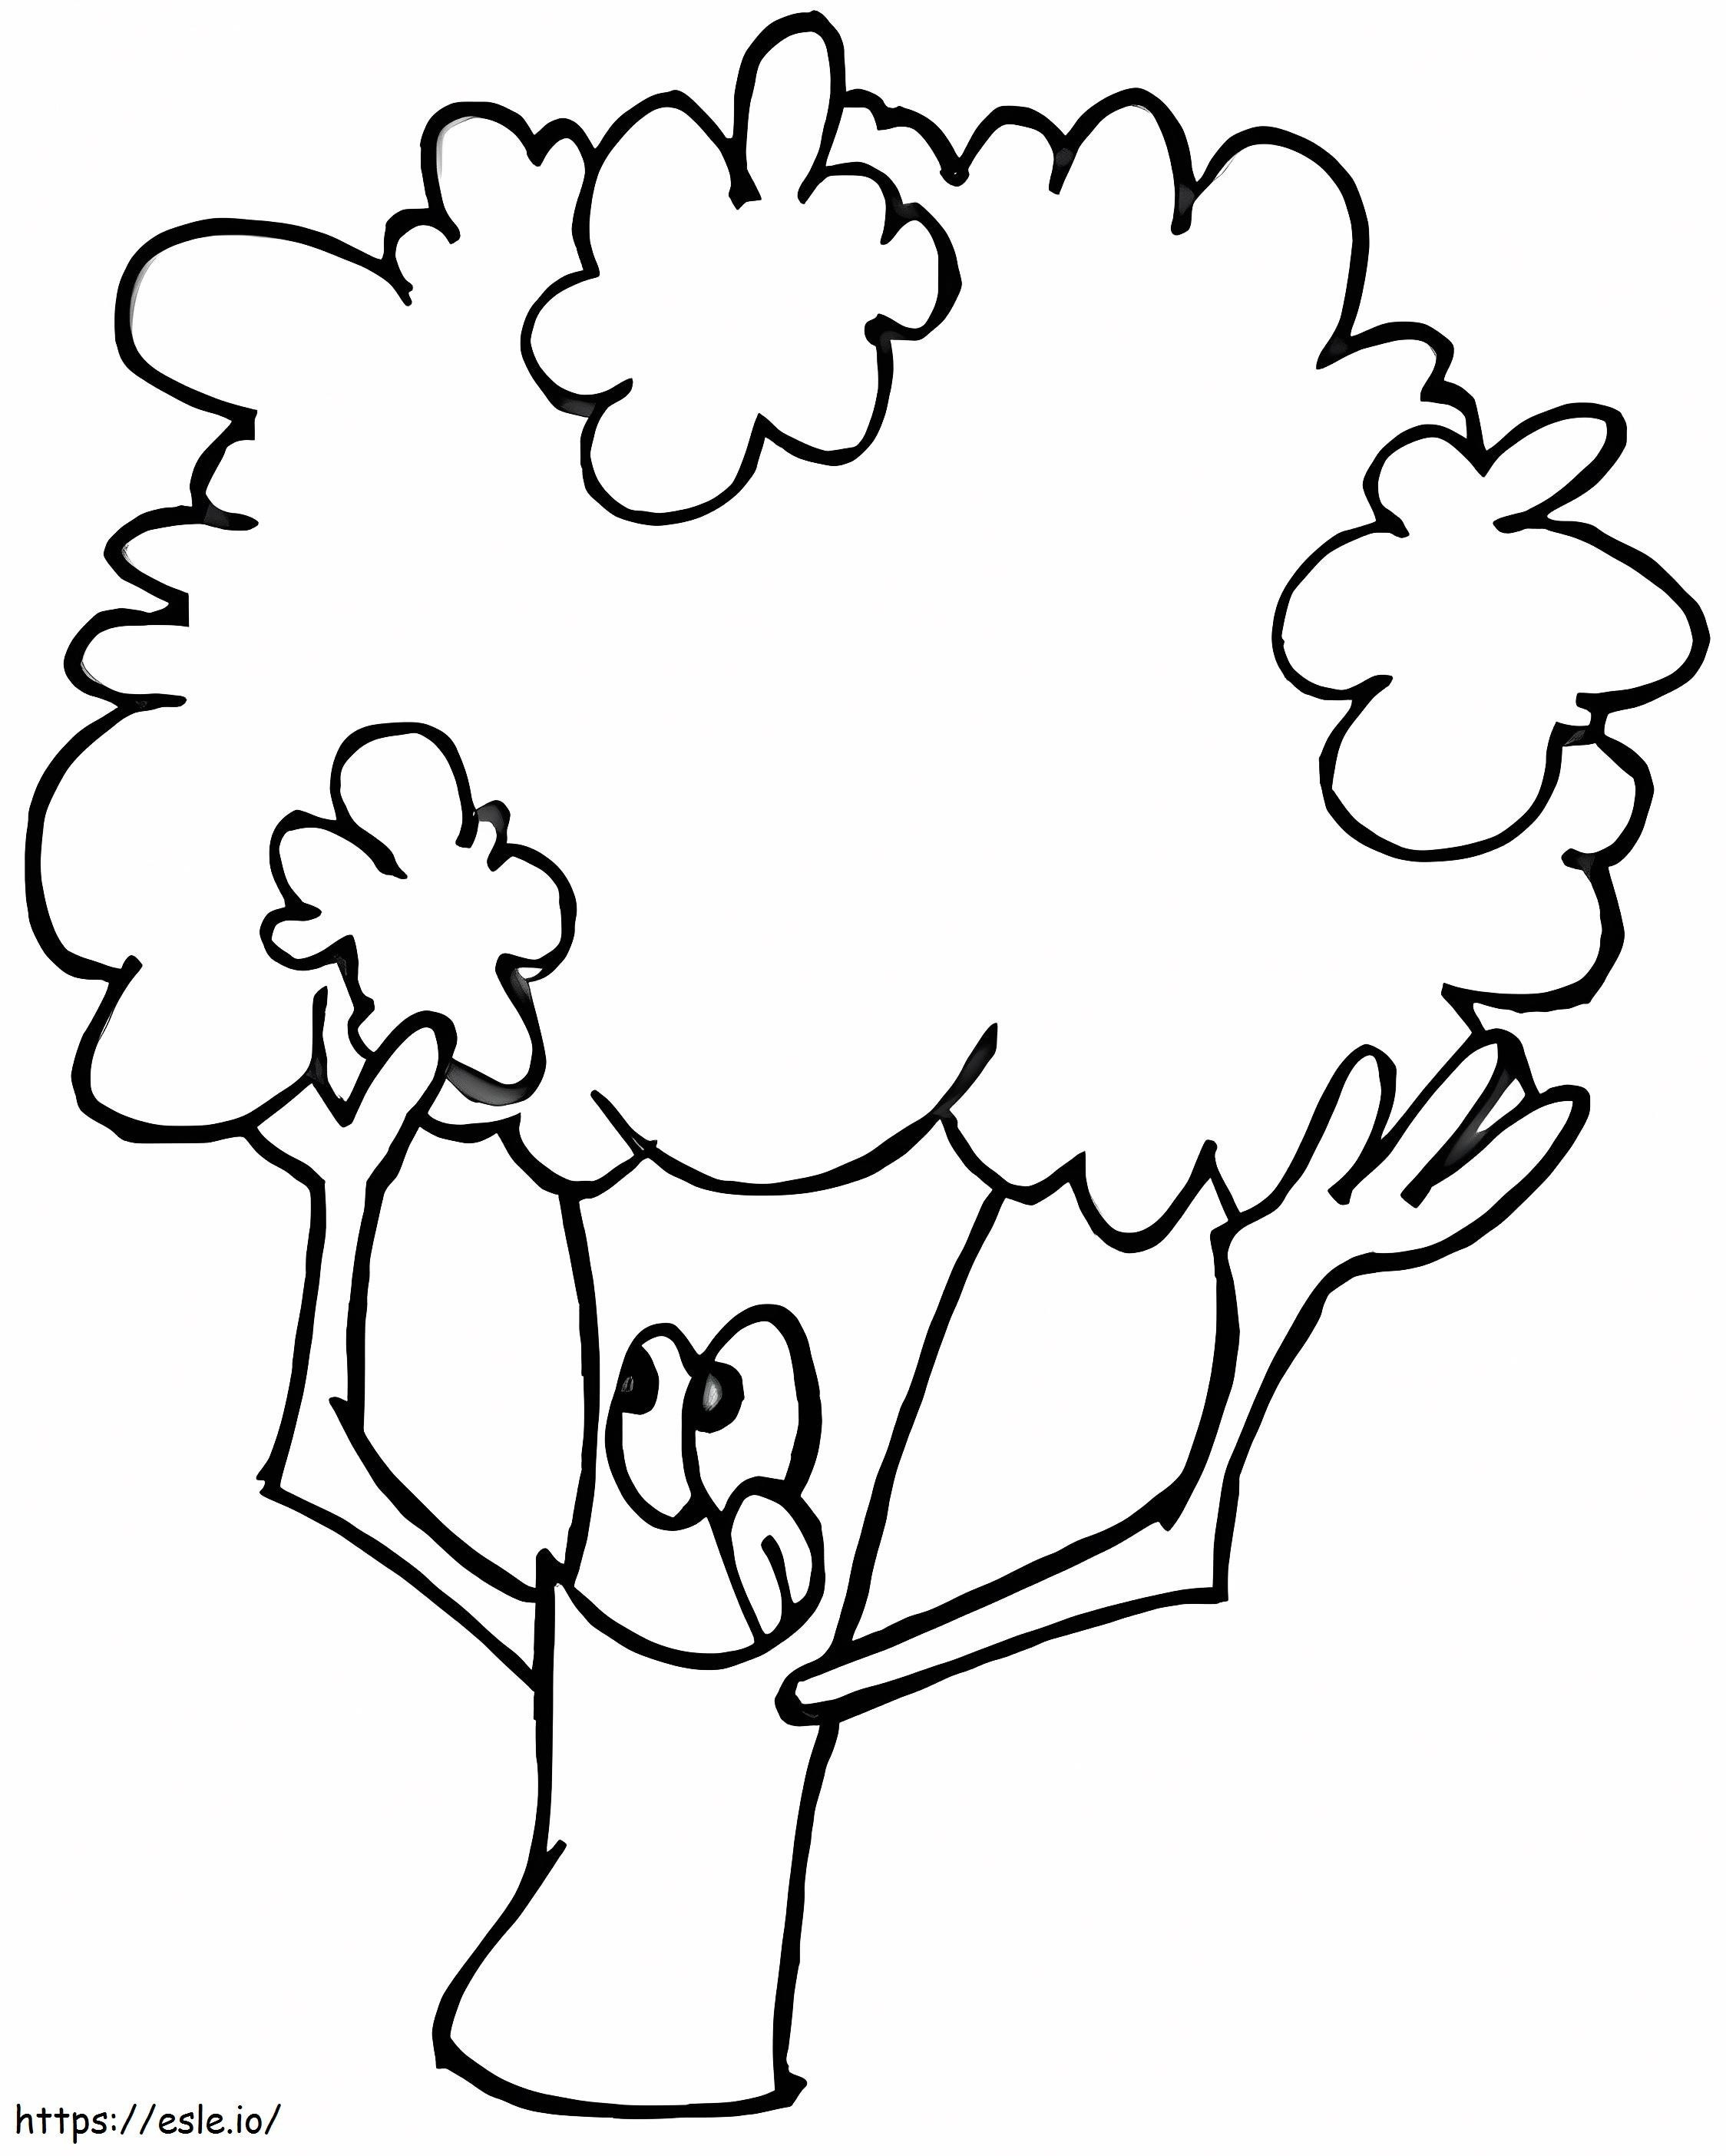 Brokuły z kreskówek kolorowanka